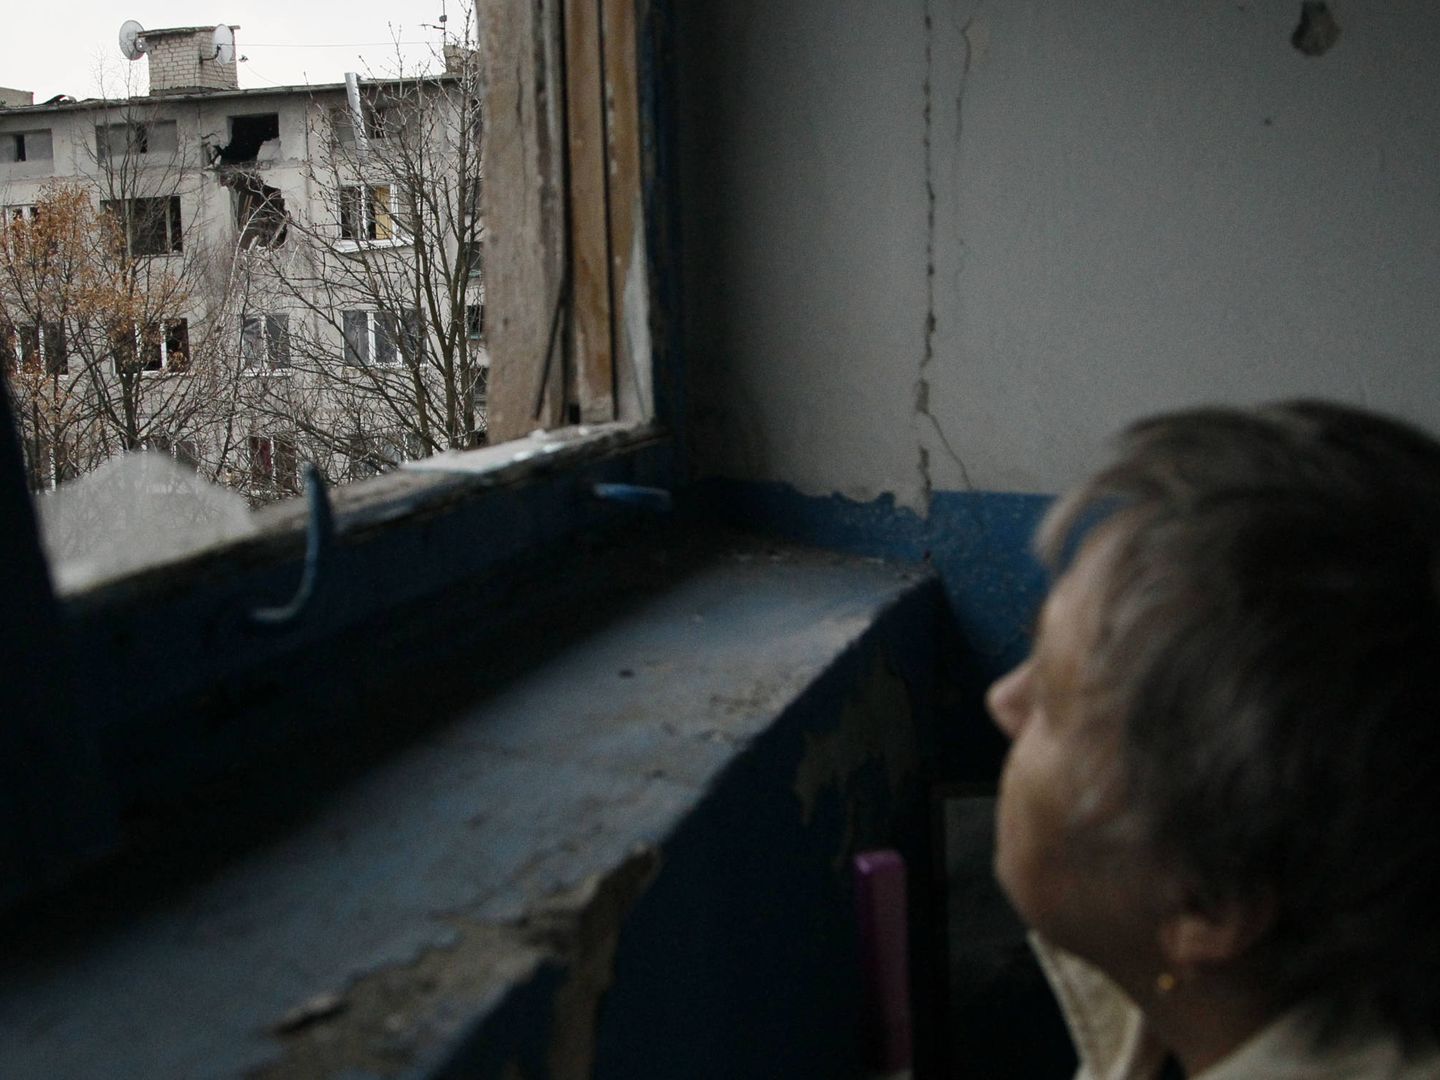 Una mujer observa un bloque de viviendas dañado por el fuego de artillería en Yasynuvata, Ucrania. (Reuters)